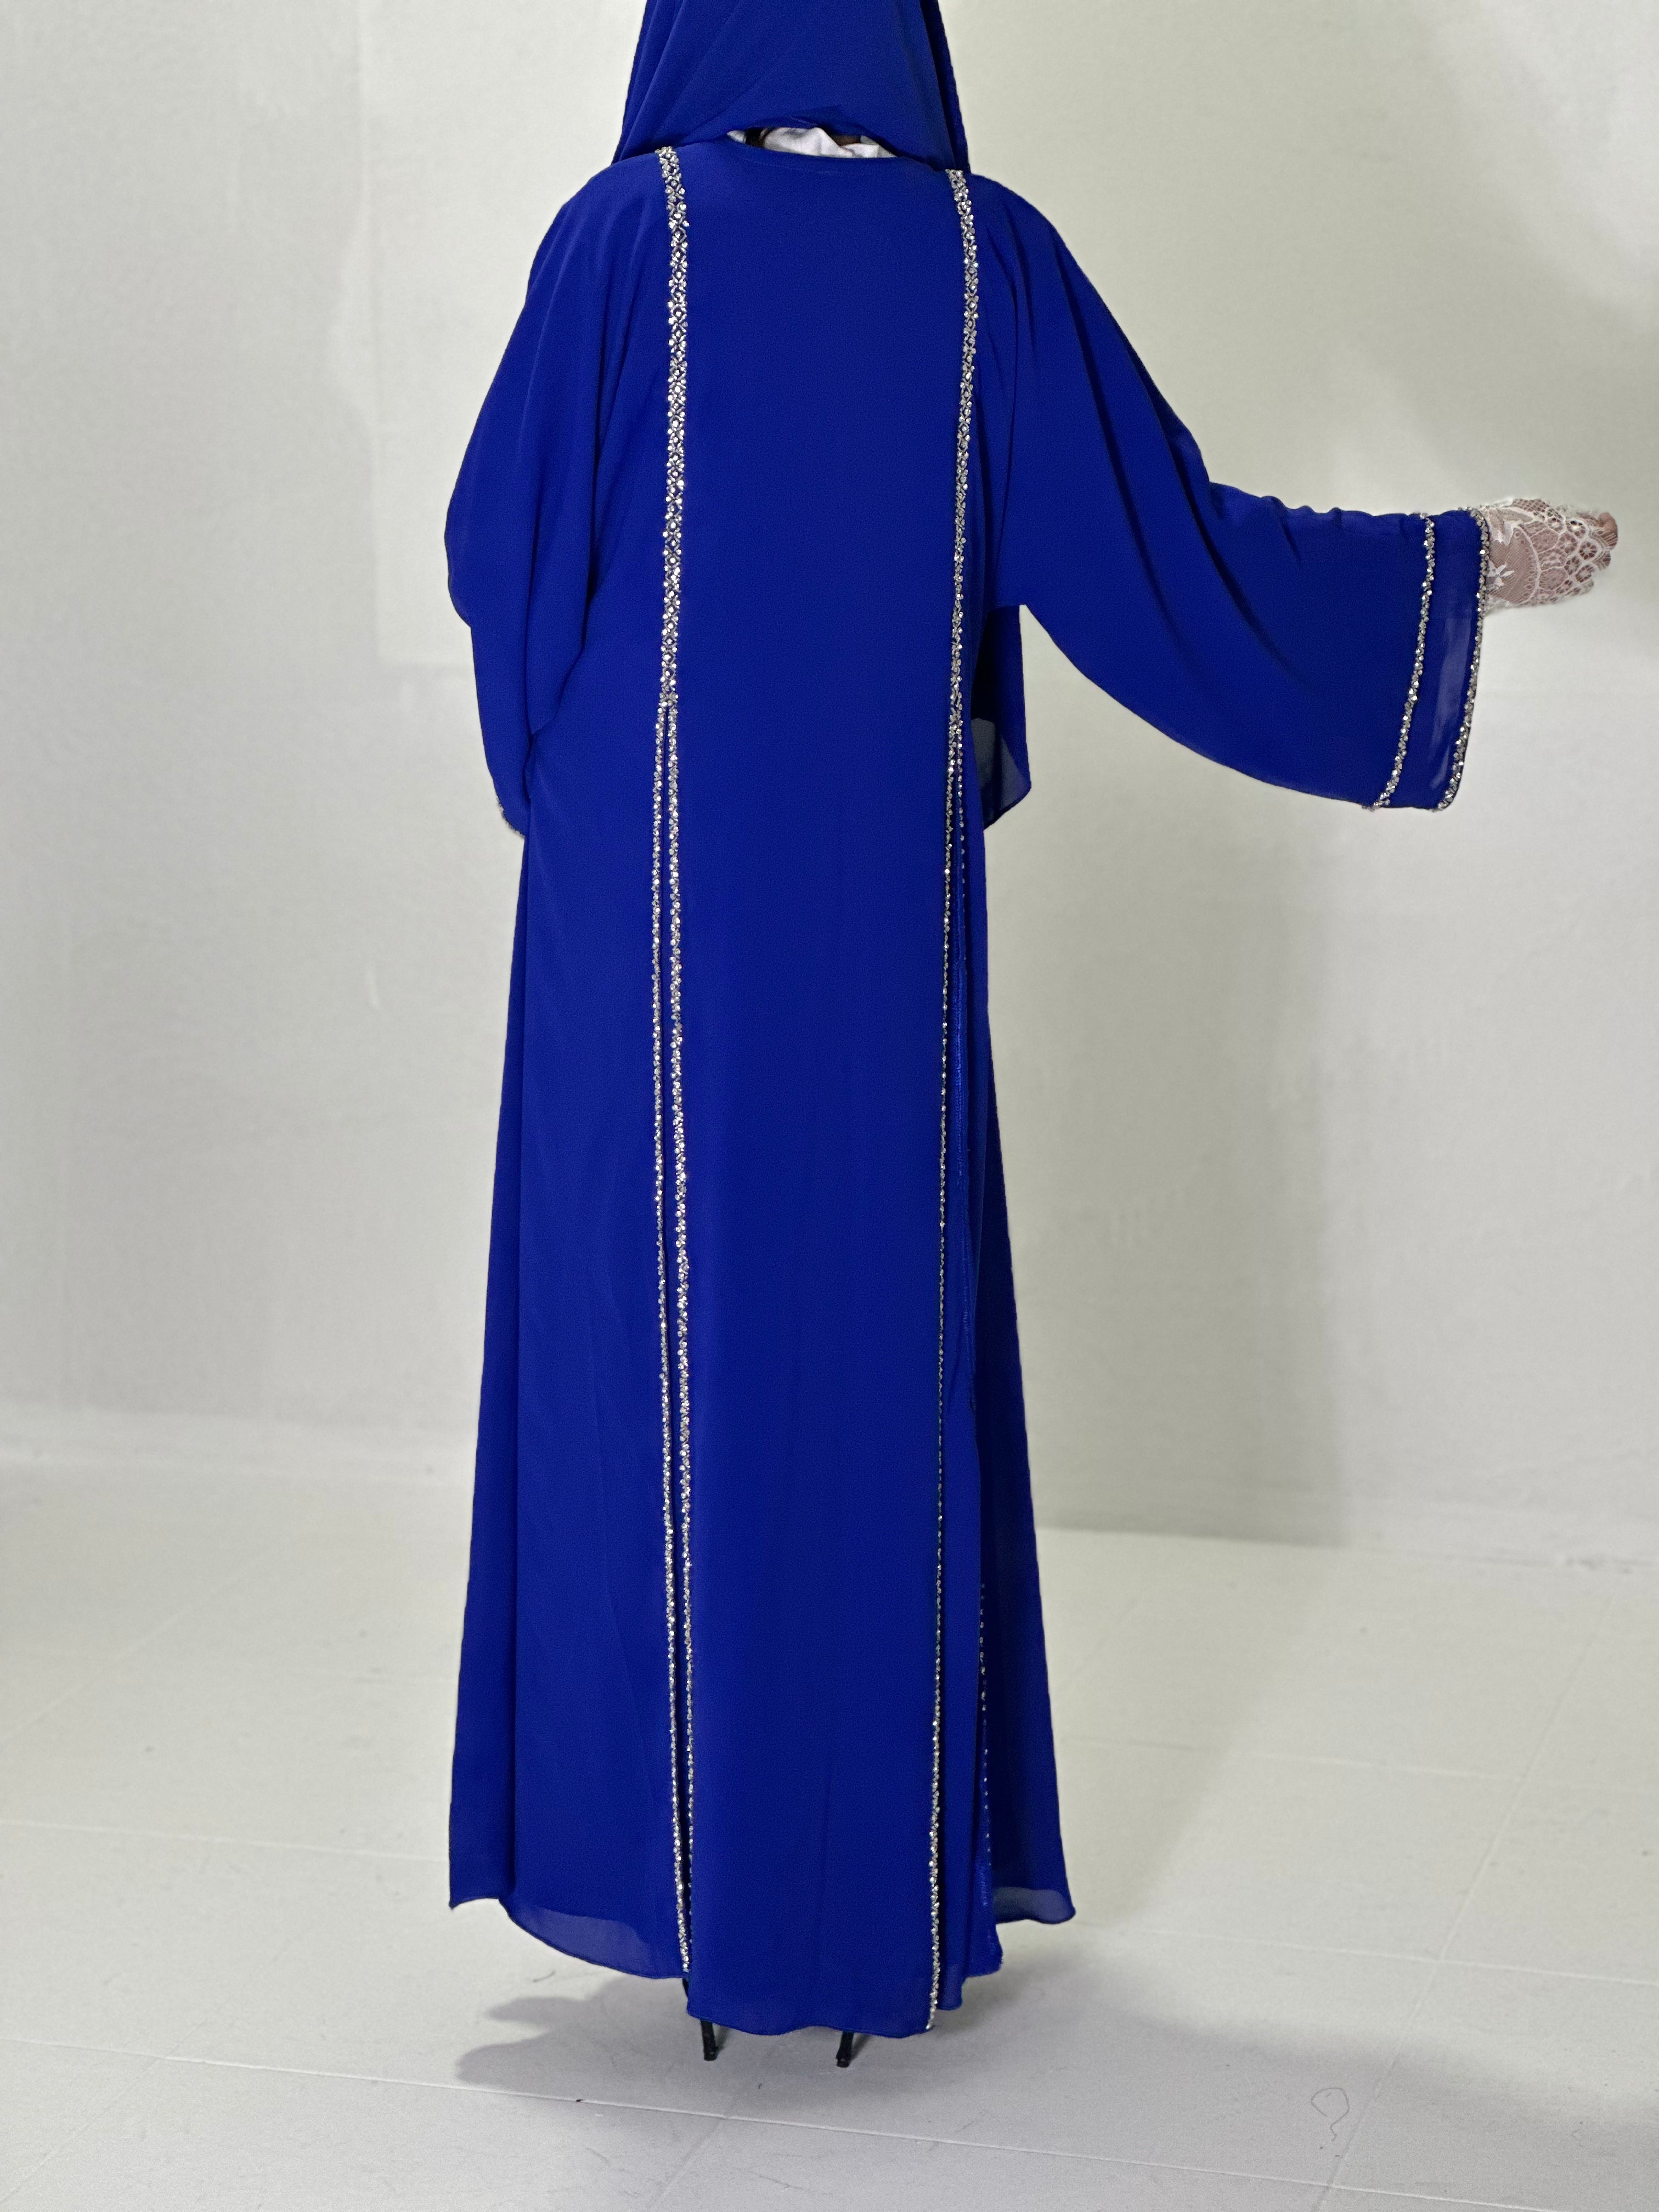 Blue satan chiffon abaya